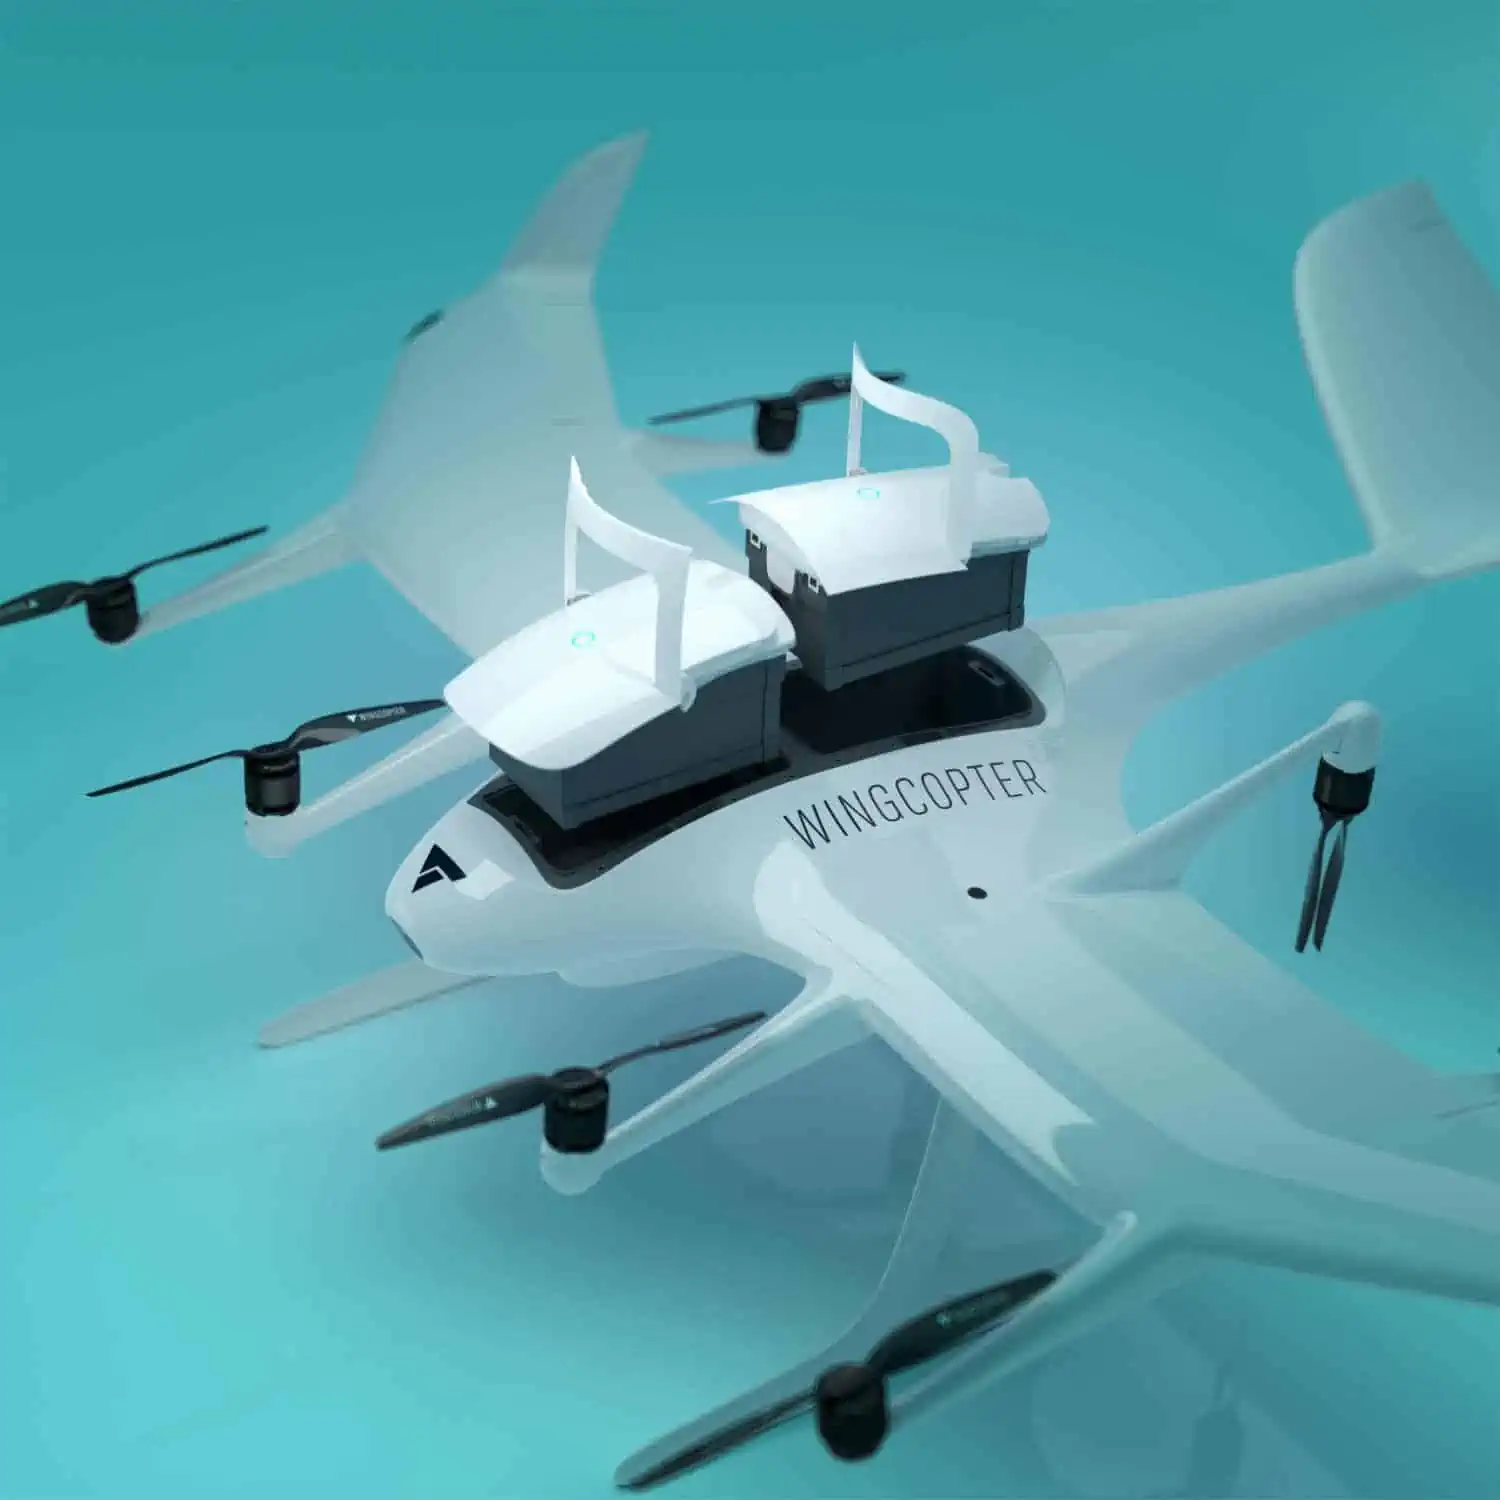 Wingcopter userà 12.000 droni per consegne